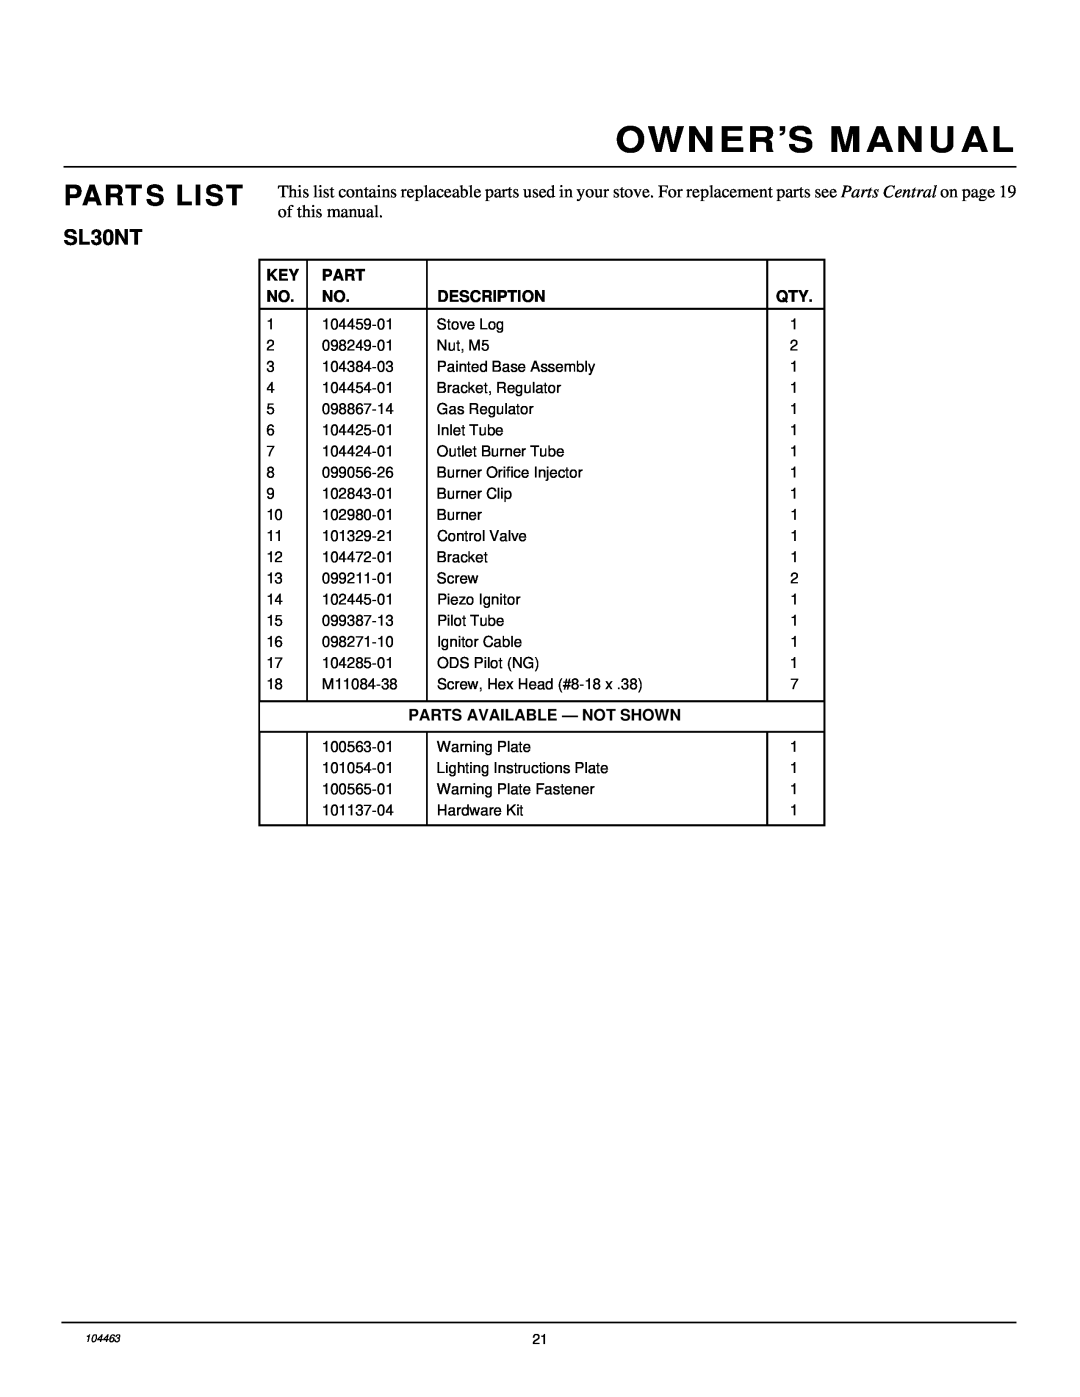 Desa Tech SL30NT installation manual Parts List, Description, Parts Available - Not Shown 